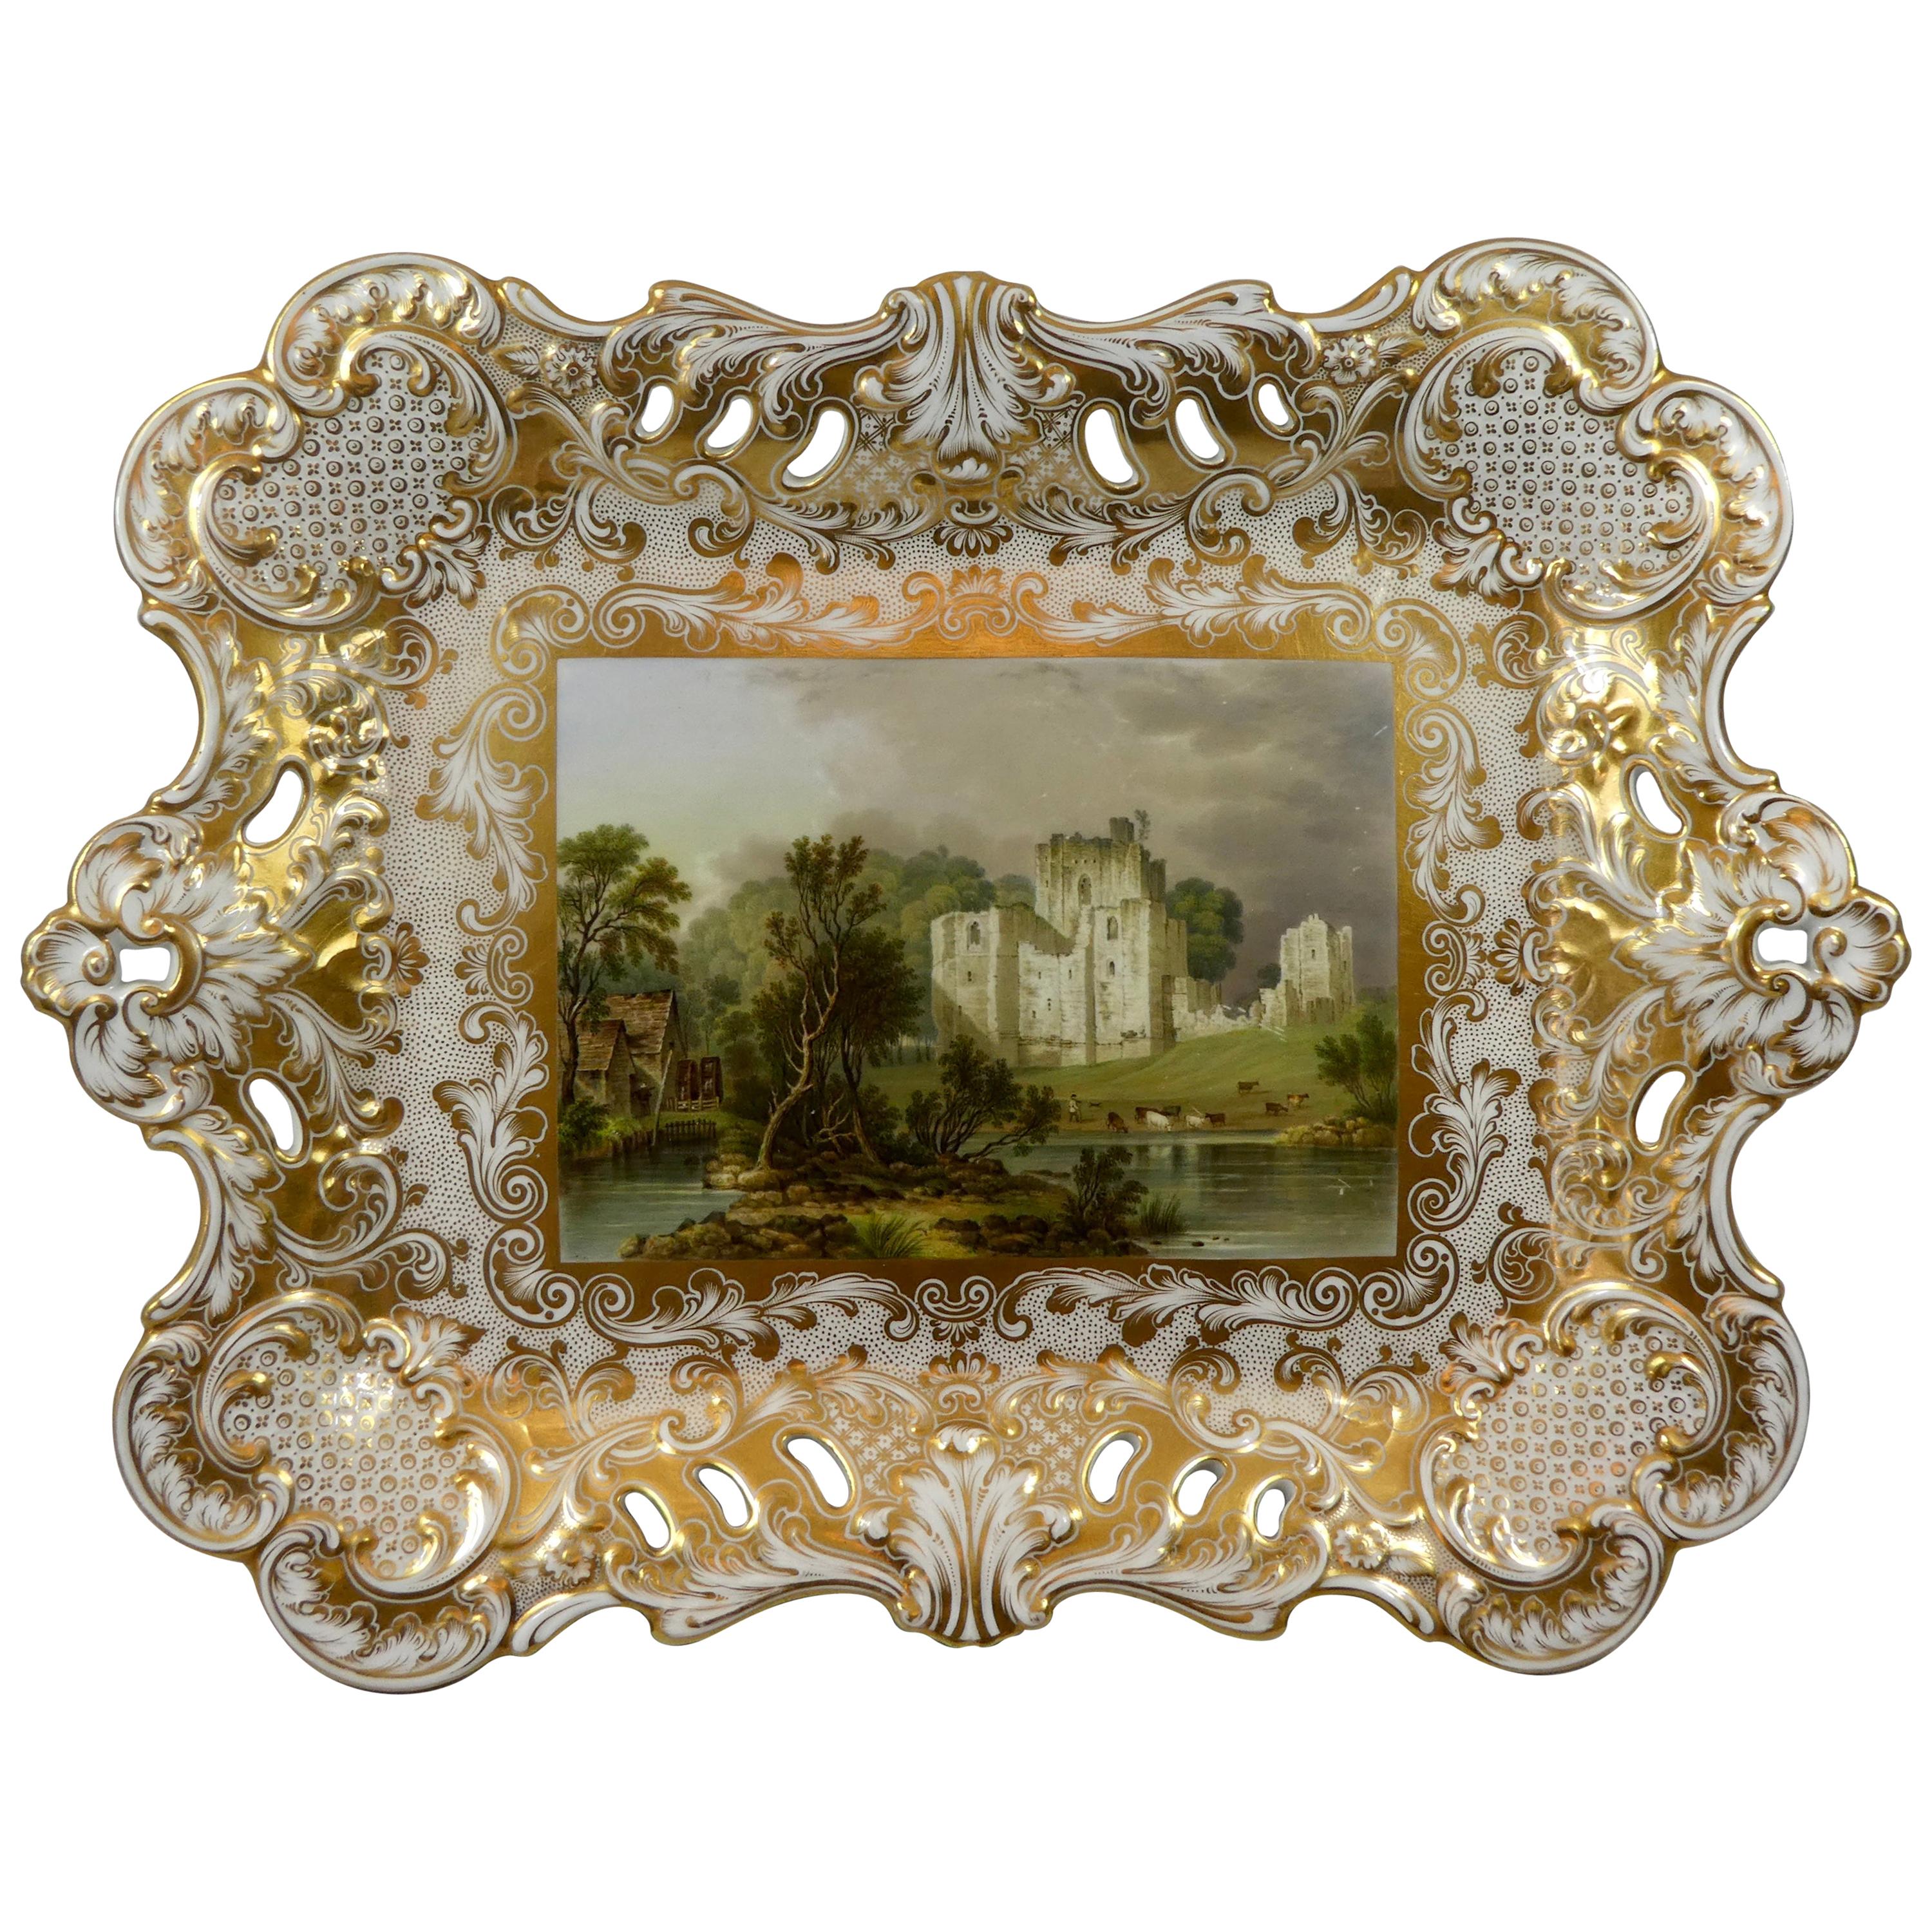 Minton Porcelain Tray, Brougham Castle, circa 1830